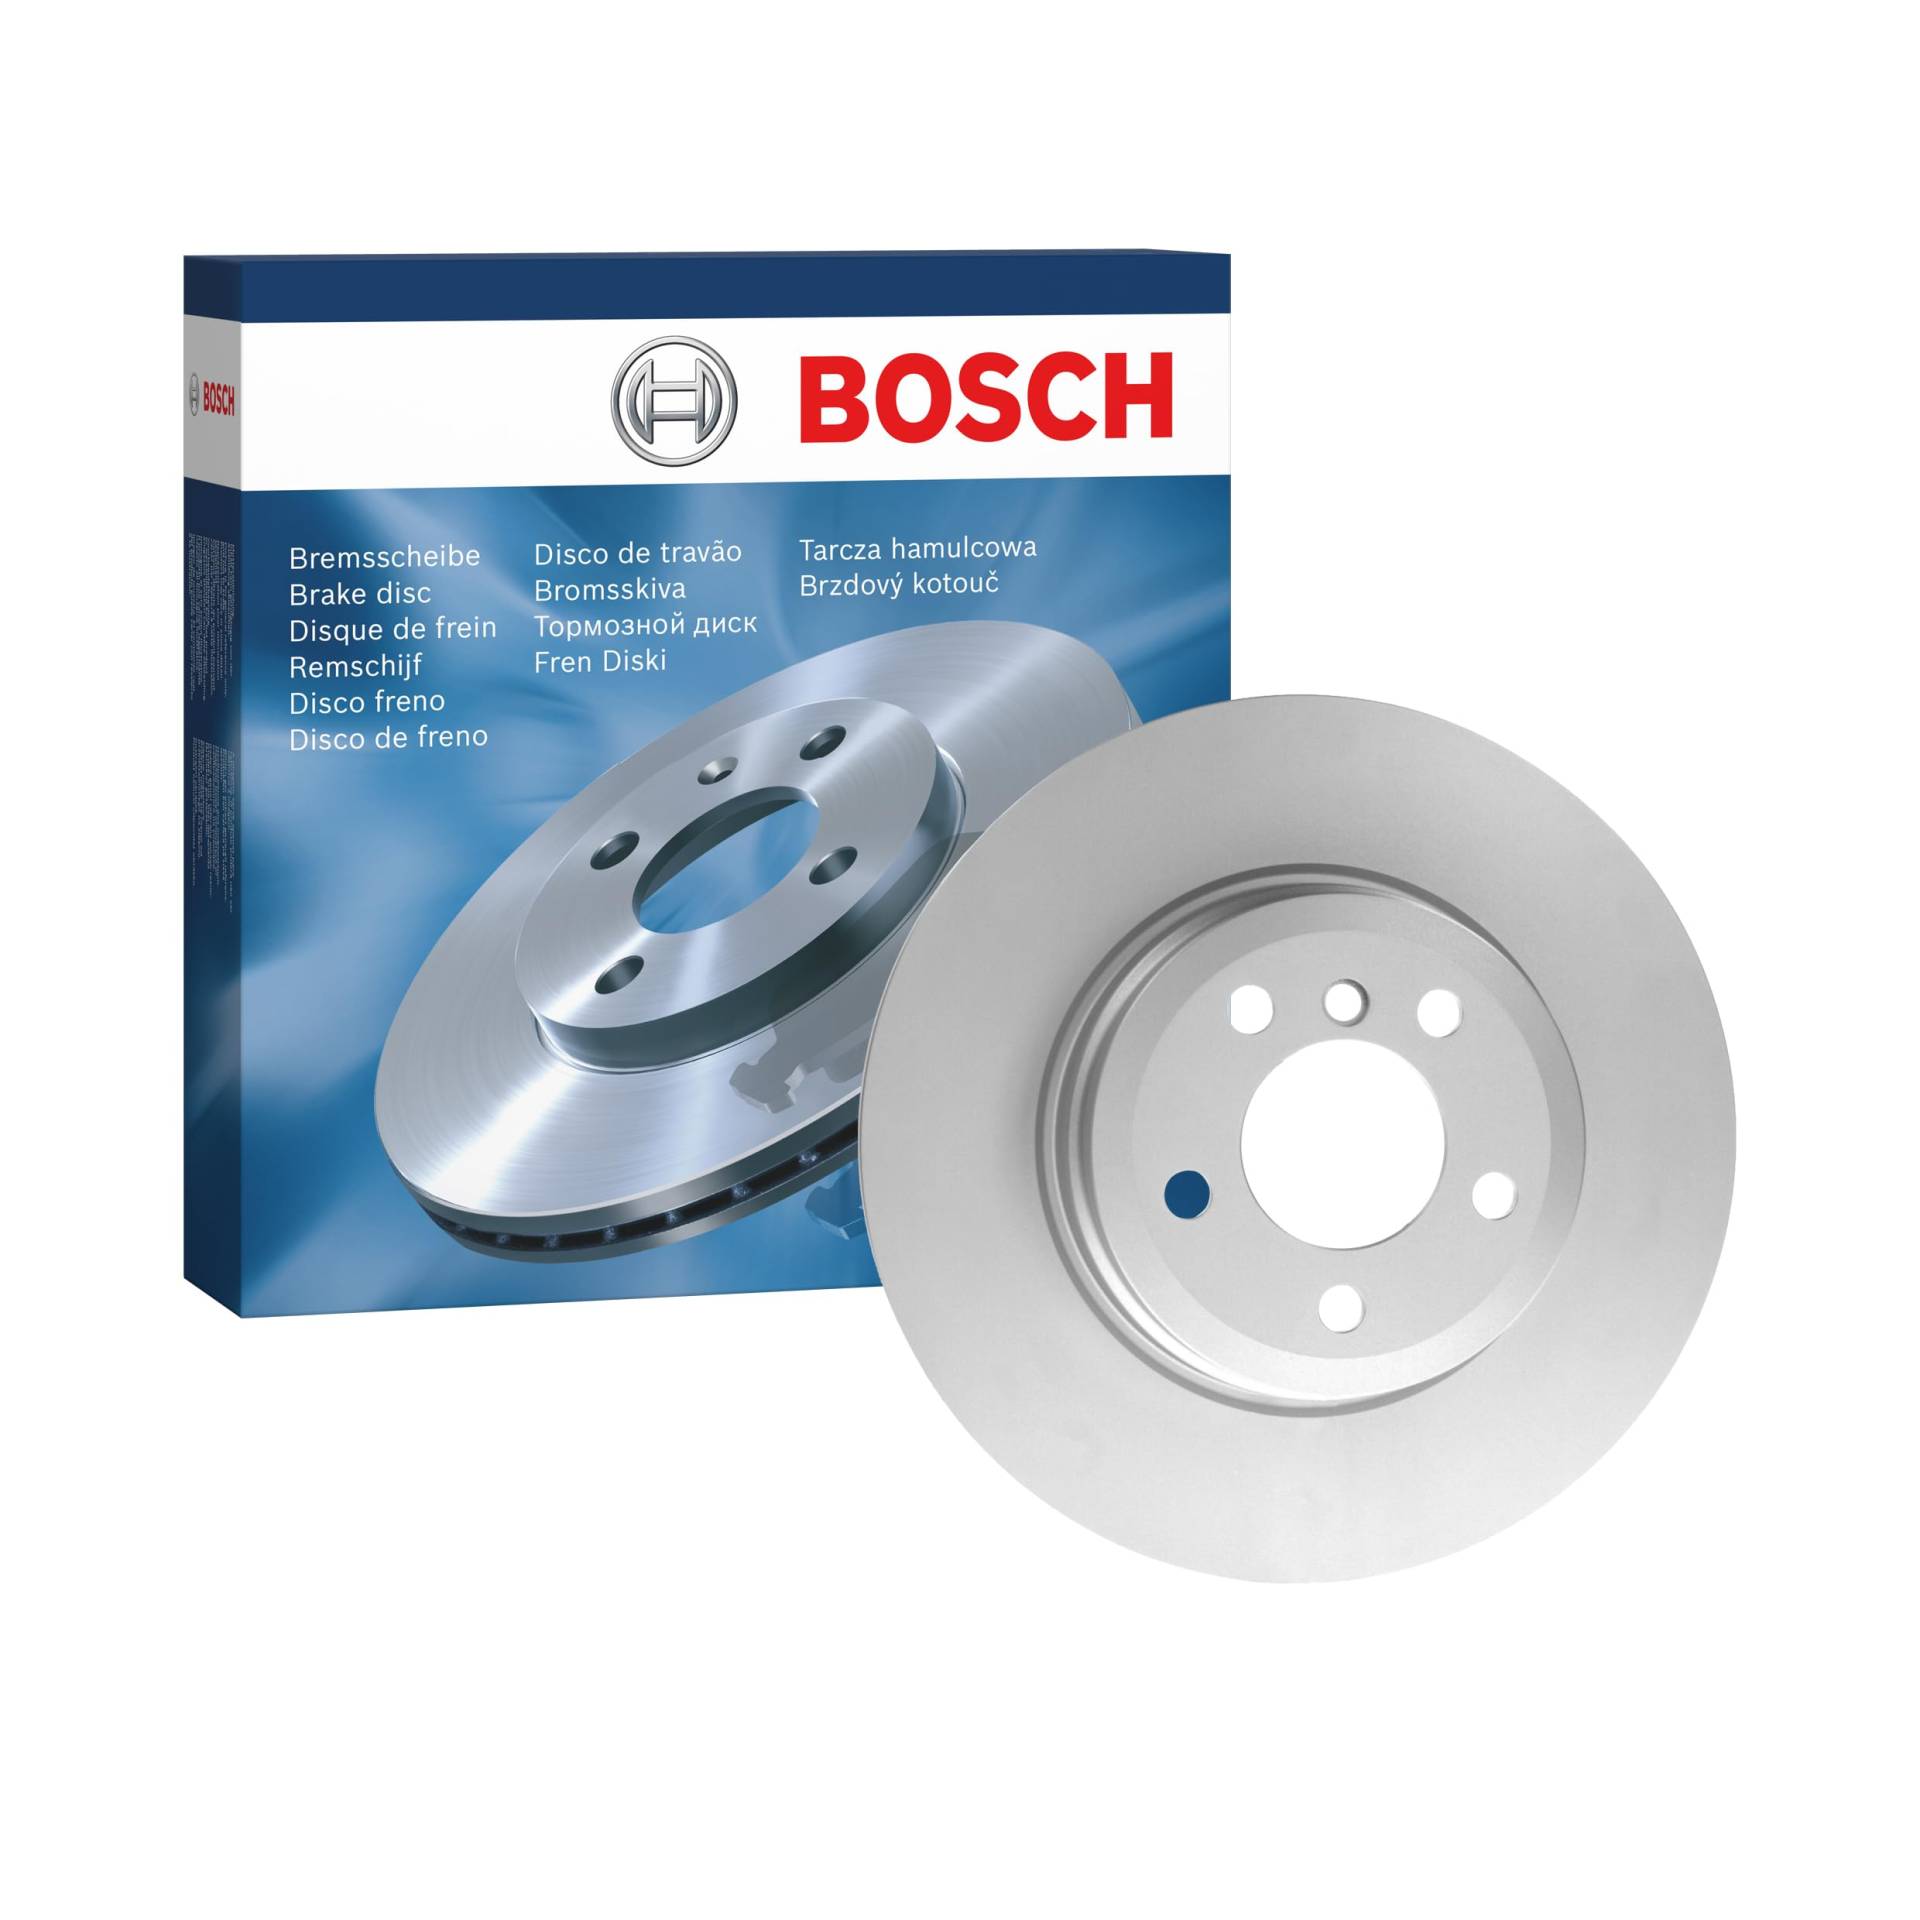 Bosch BD1321 Bremsscheiben - Hinterachse - ECE-R90 Zertifizierung - eine Bremsscheibe von Bosch Automotive